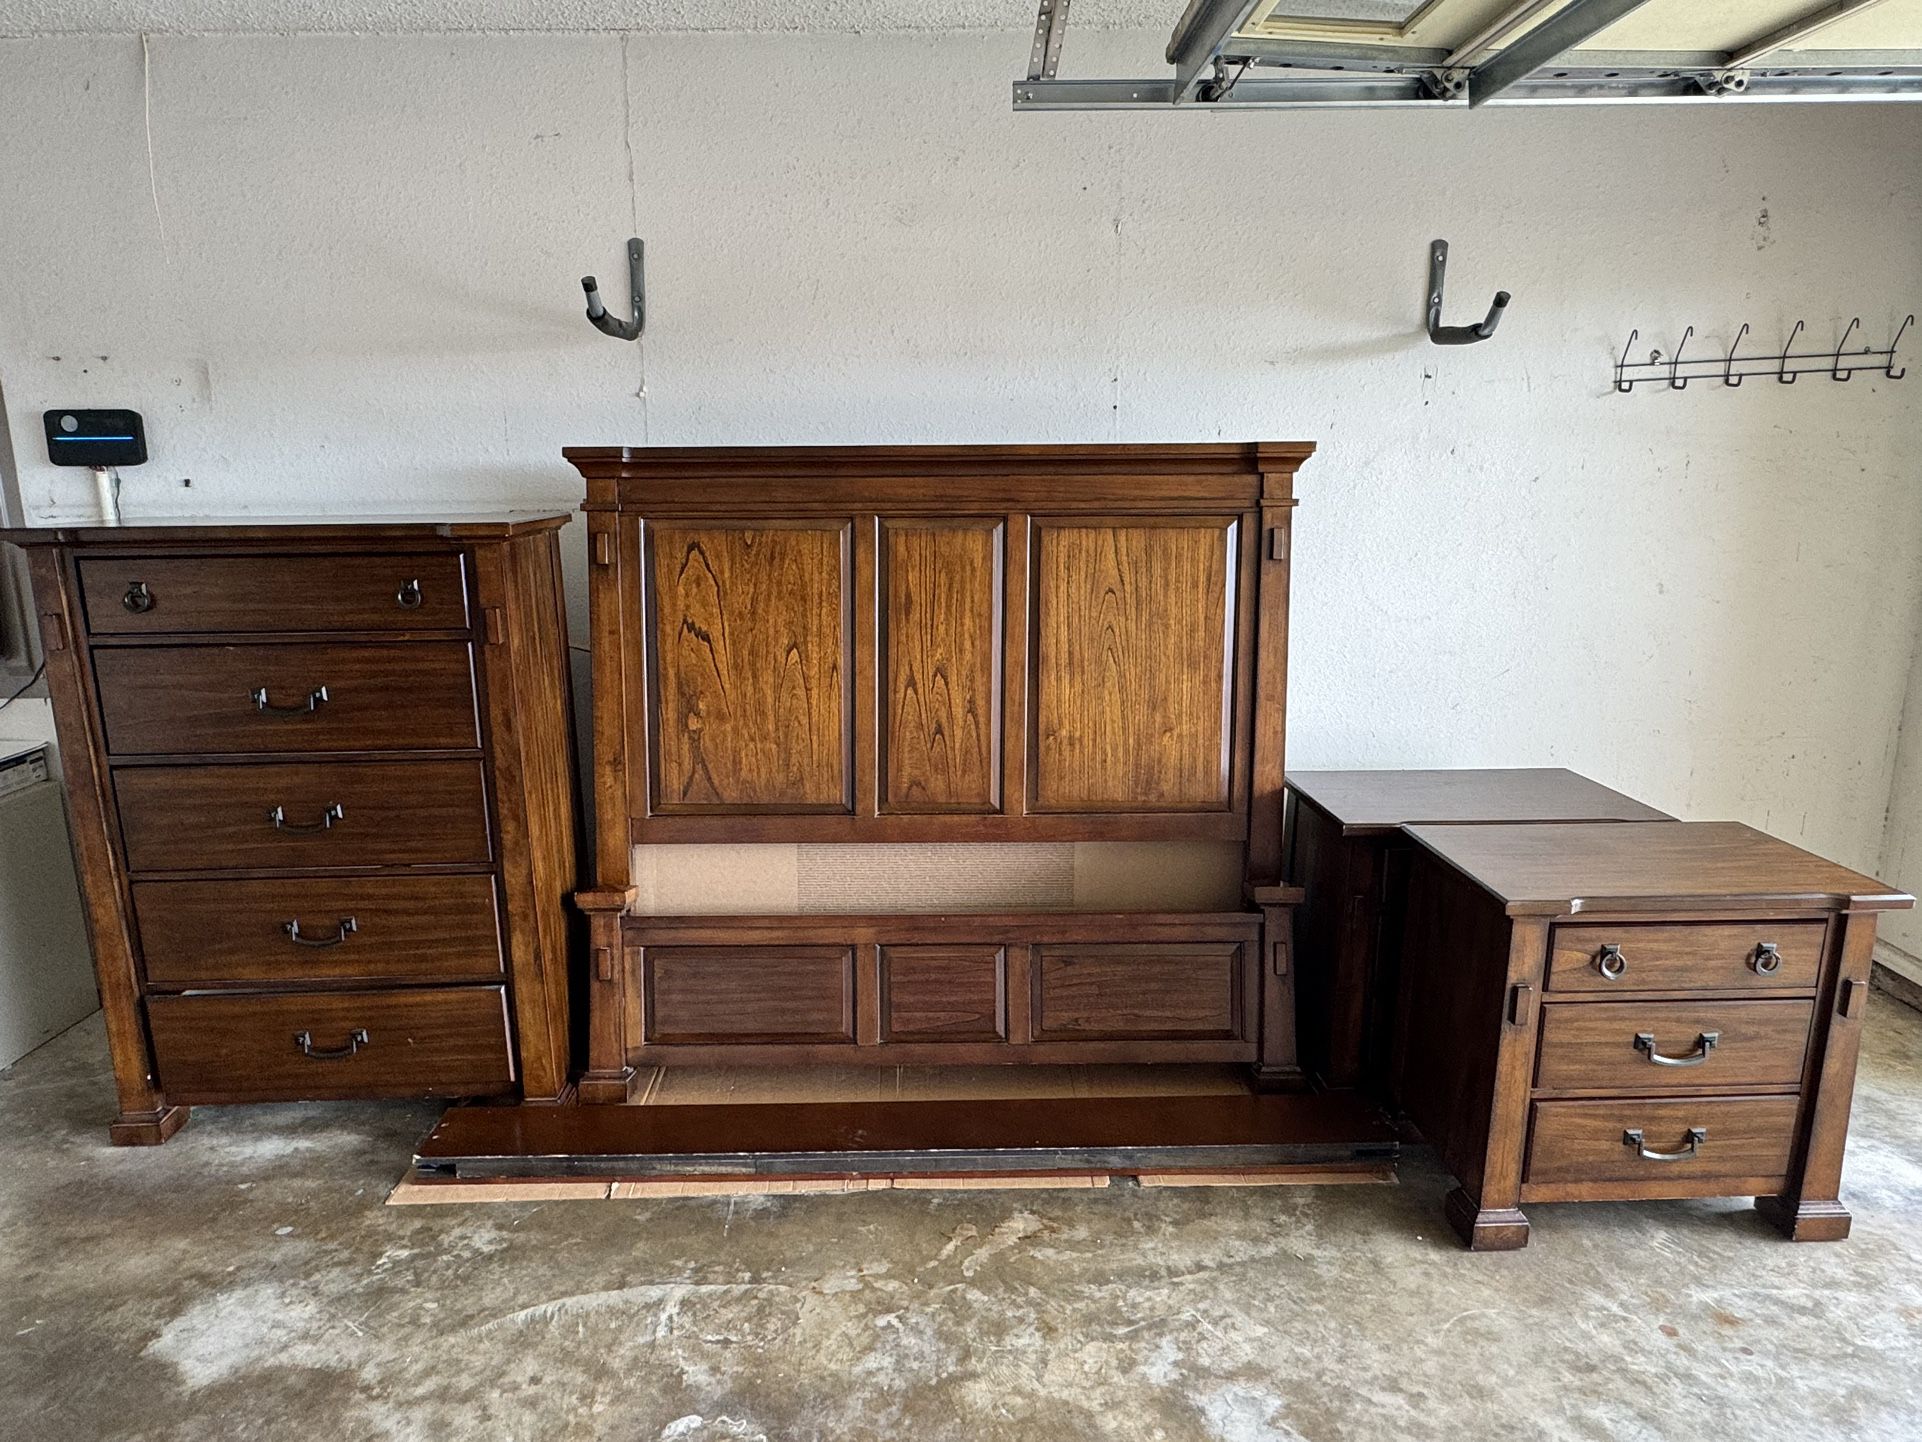 Chestnut Brown Hardwood Bedroom Furniture Set (ASHLEY FURNITURE)